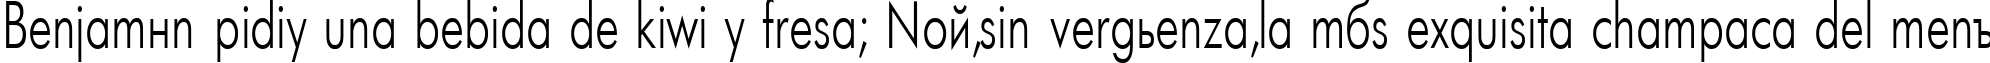 Пример написания шрифтом Futuris70n текста на испанском